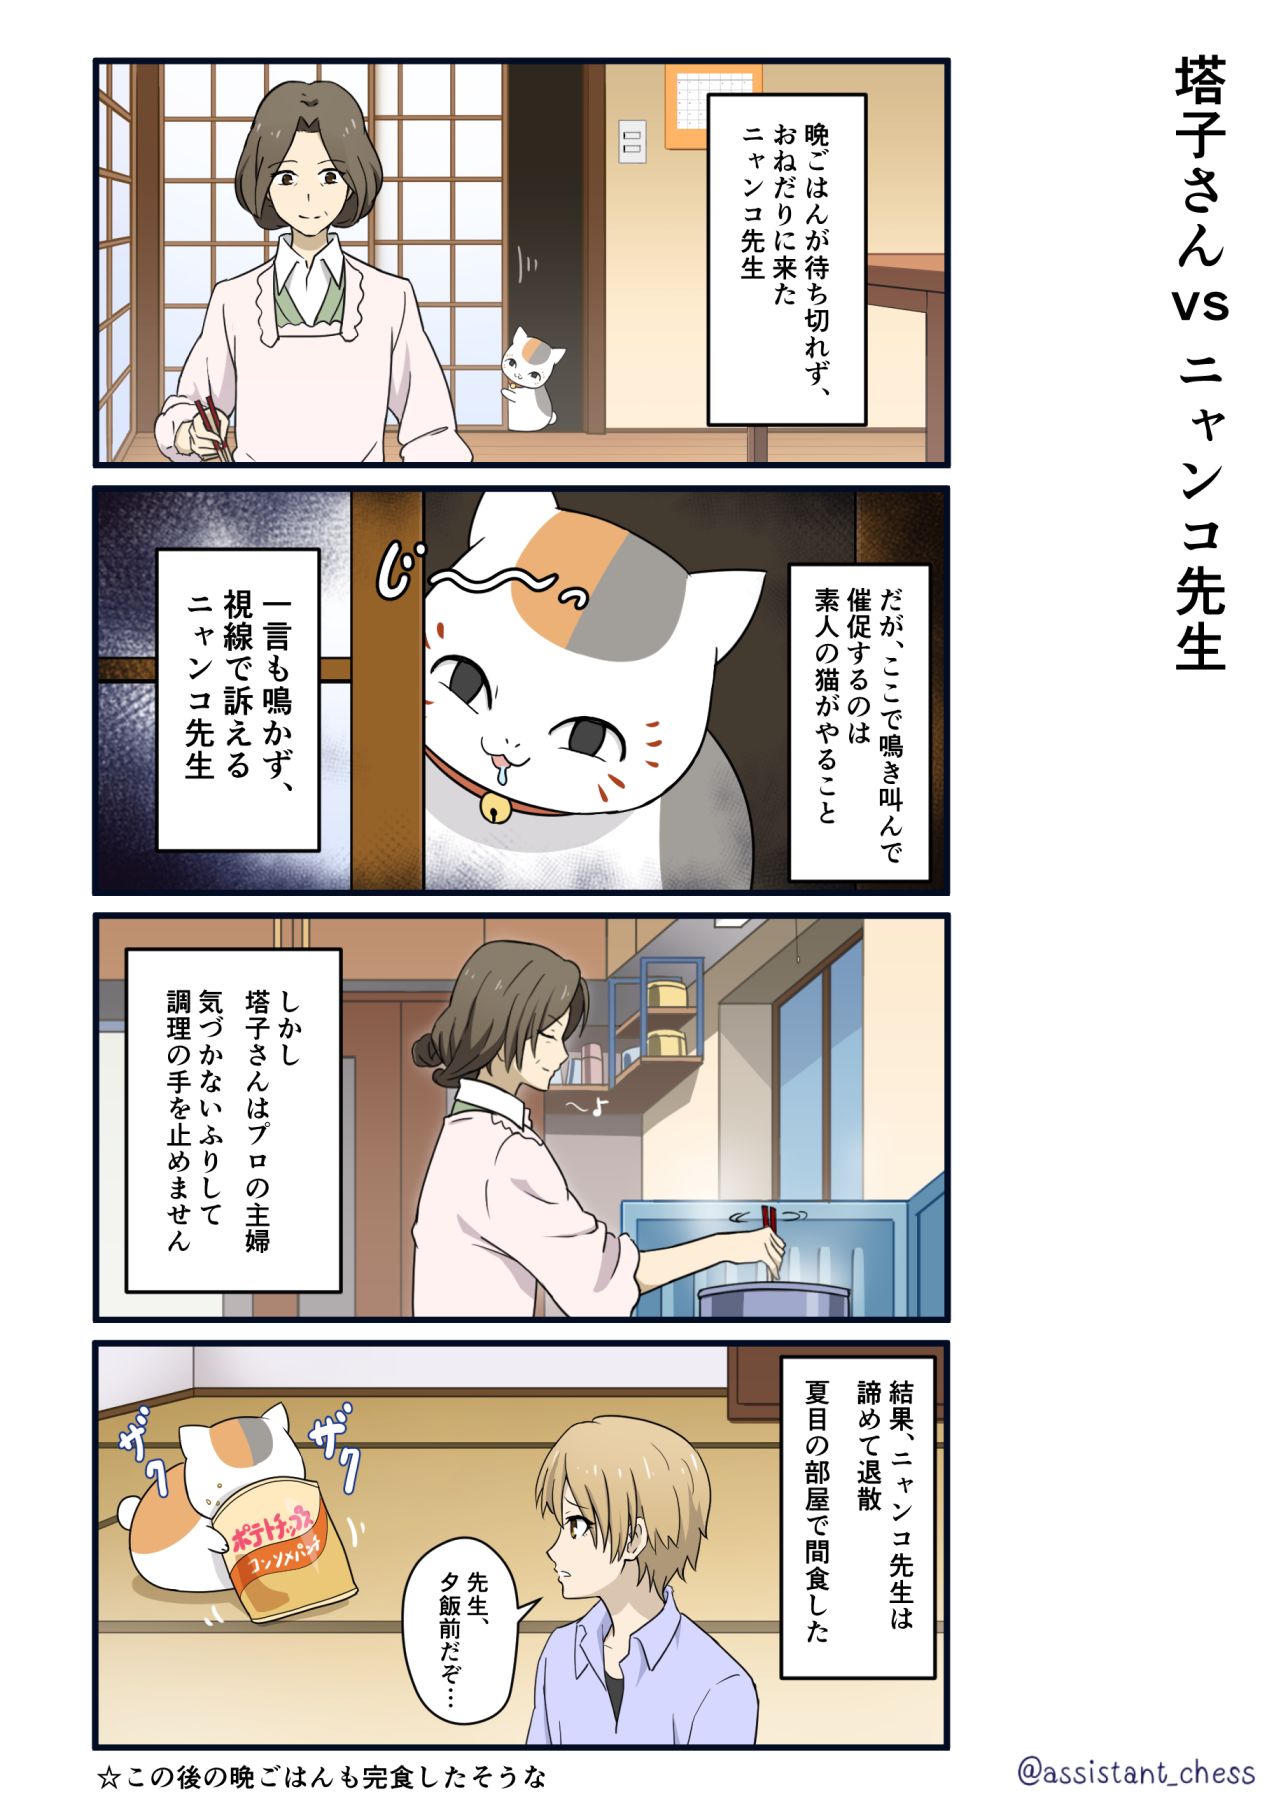 【4格】塔子vs猫咪老师